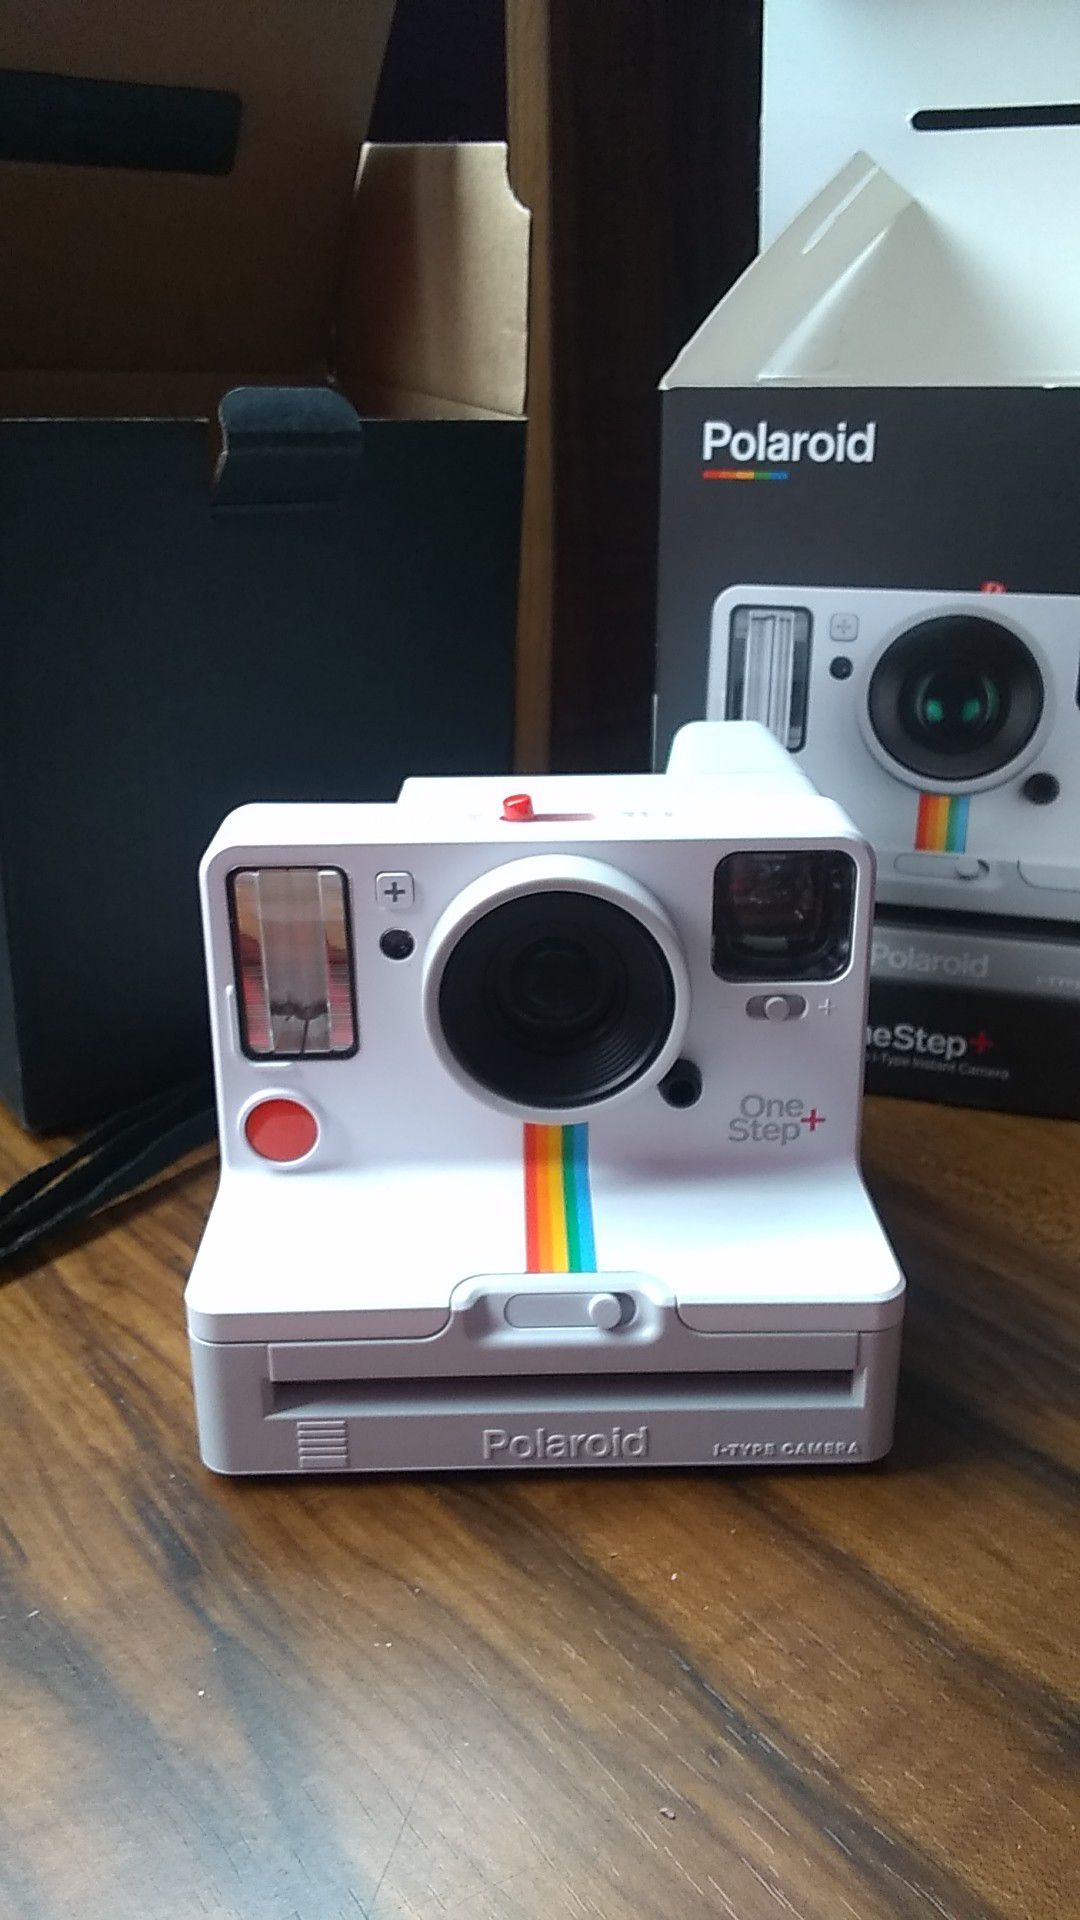 Polaroid one-step plus